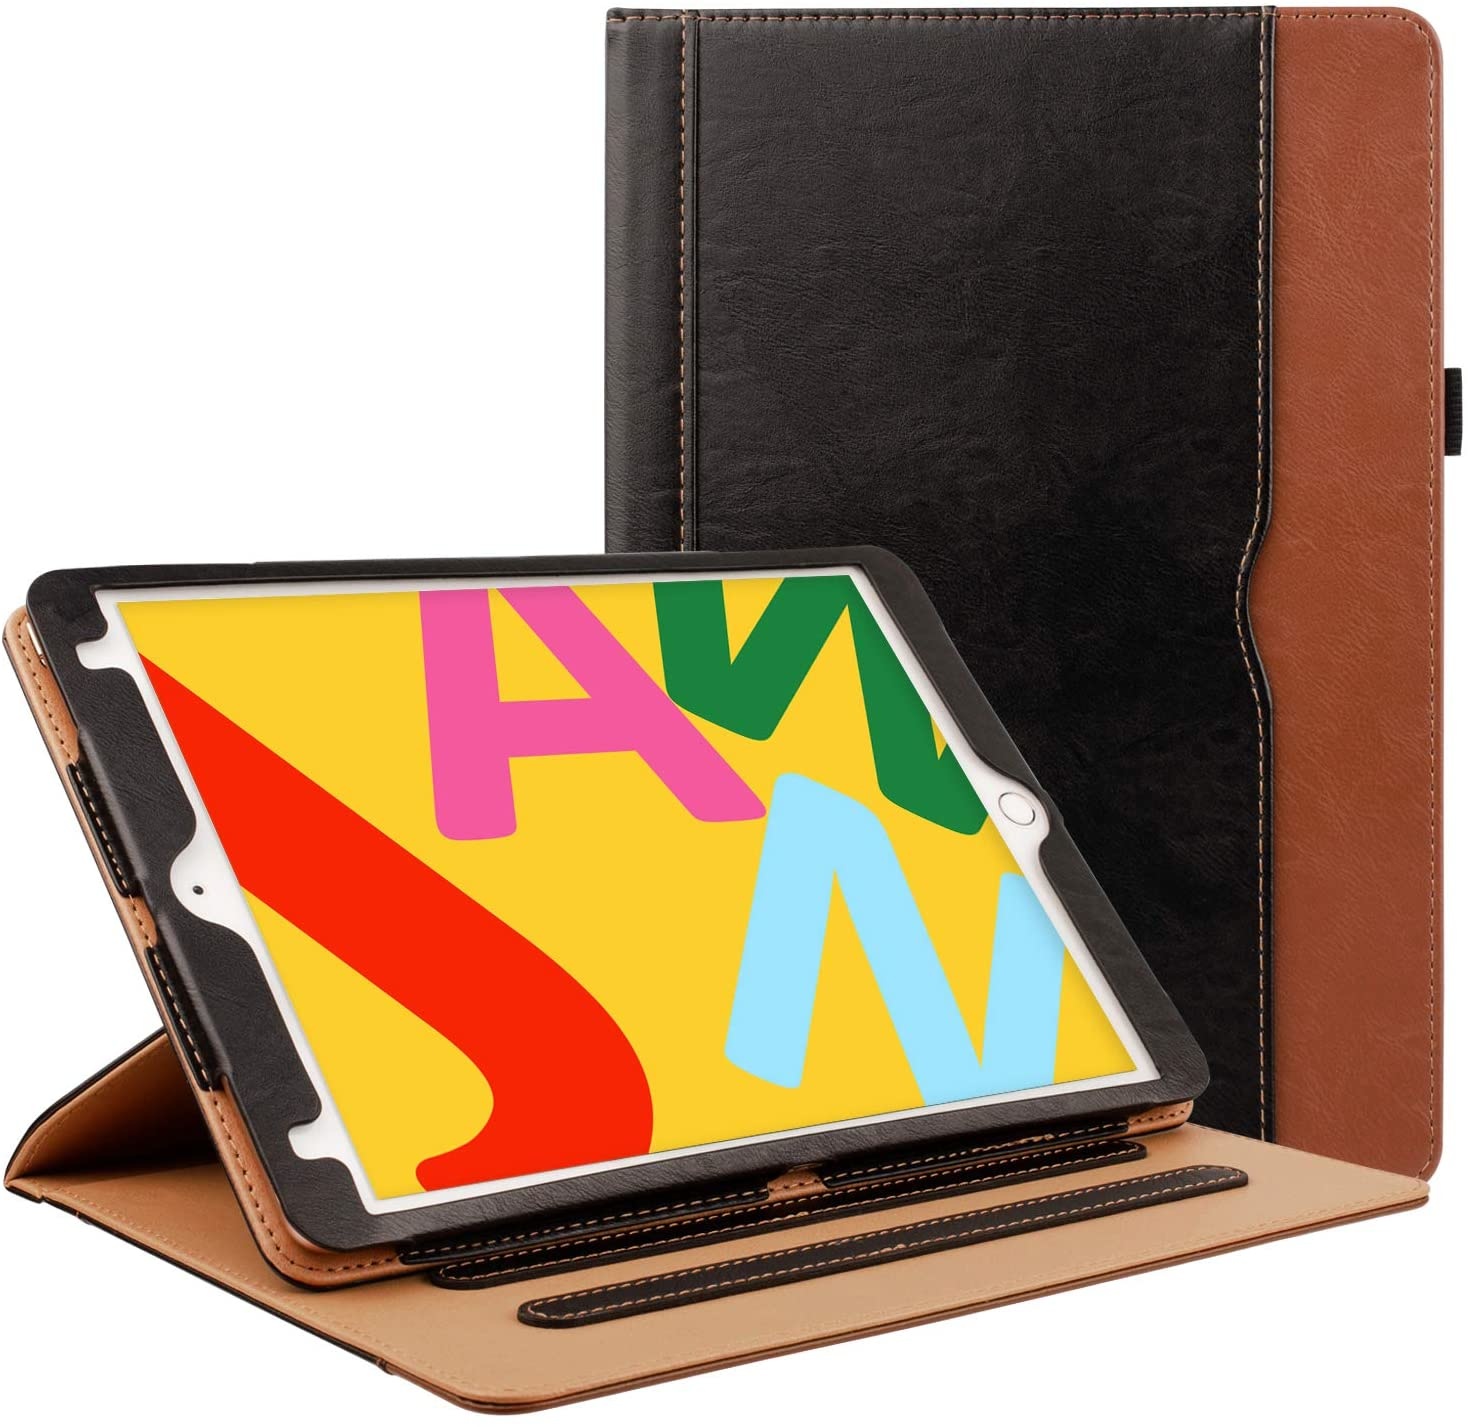 Poort omhelzing Somatische cel iPad hoes 2018 luxe leer bruin zwart - Gratis Verzending - iPadspullekes